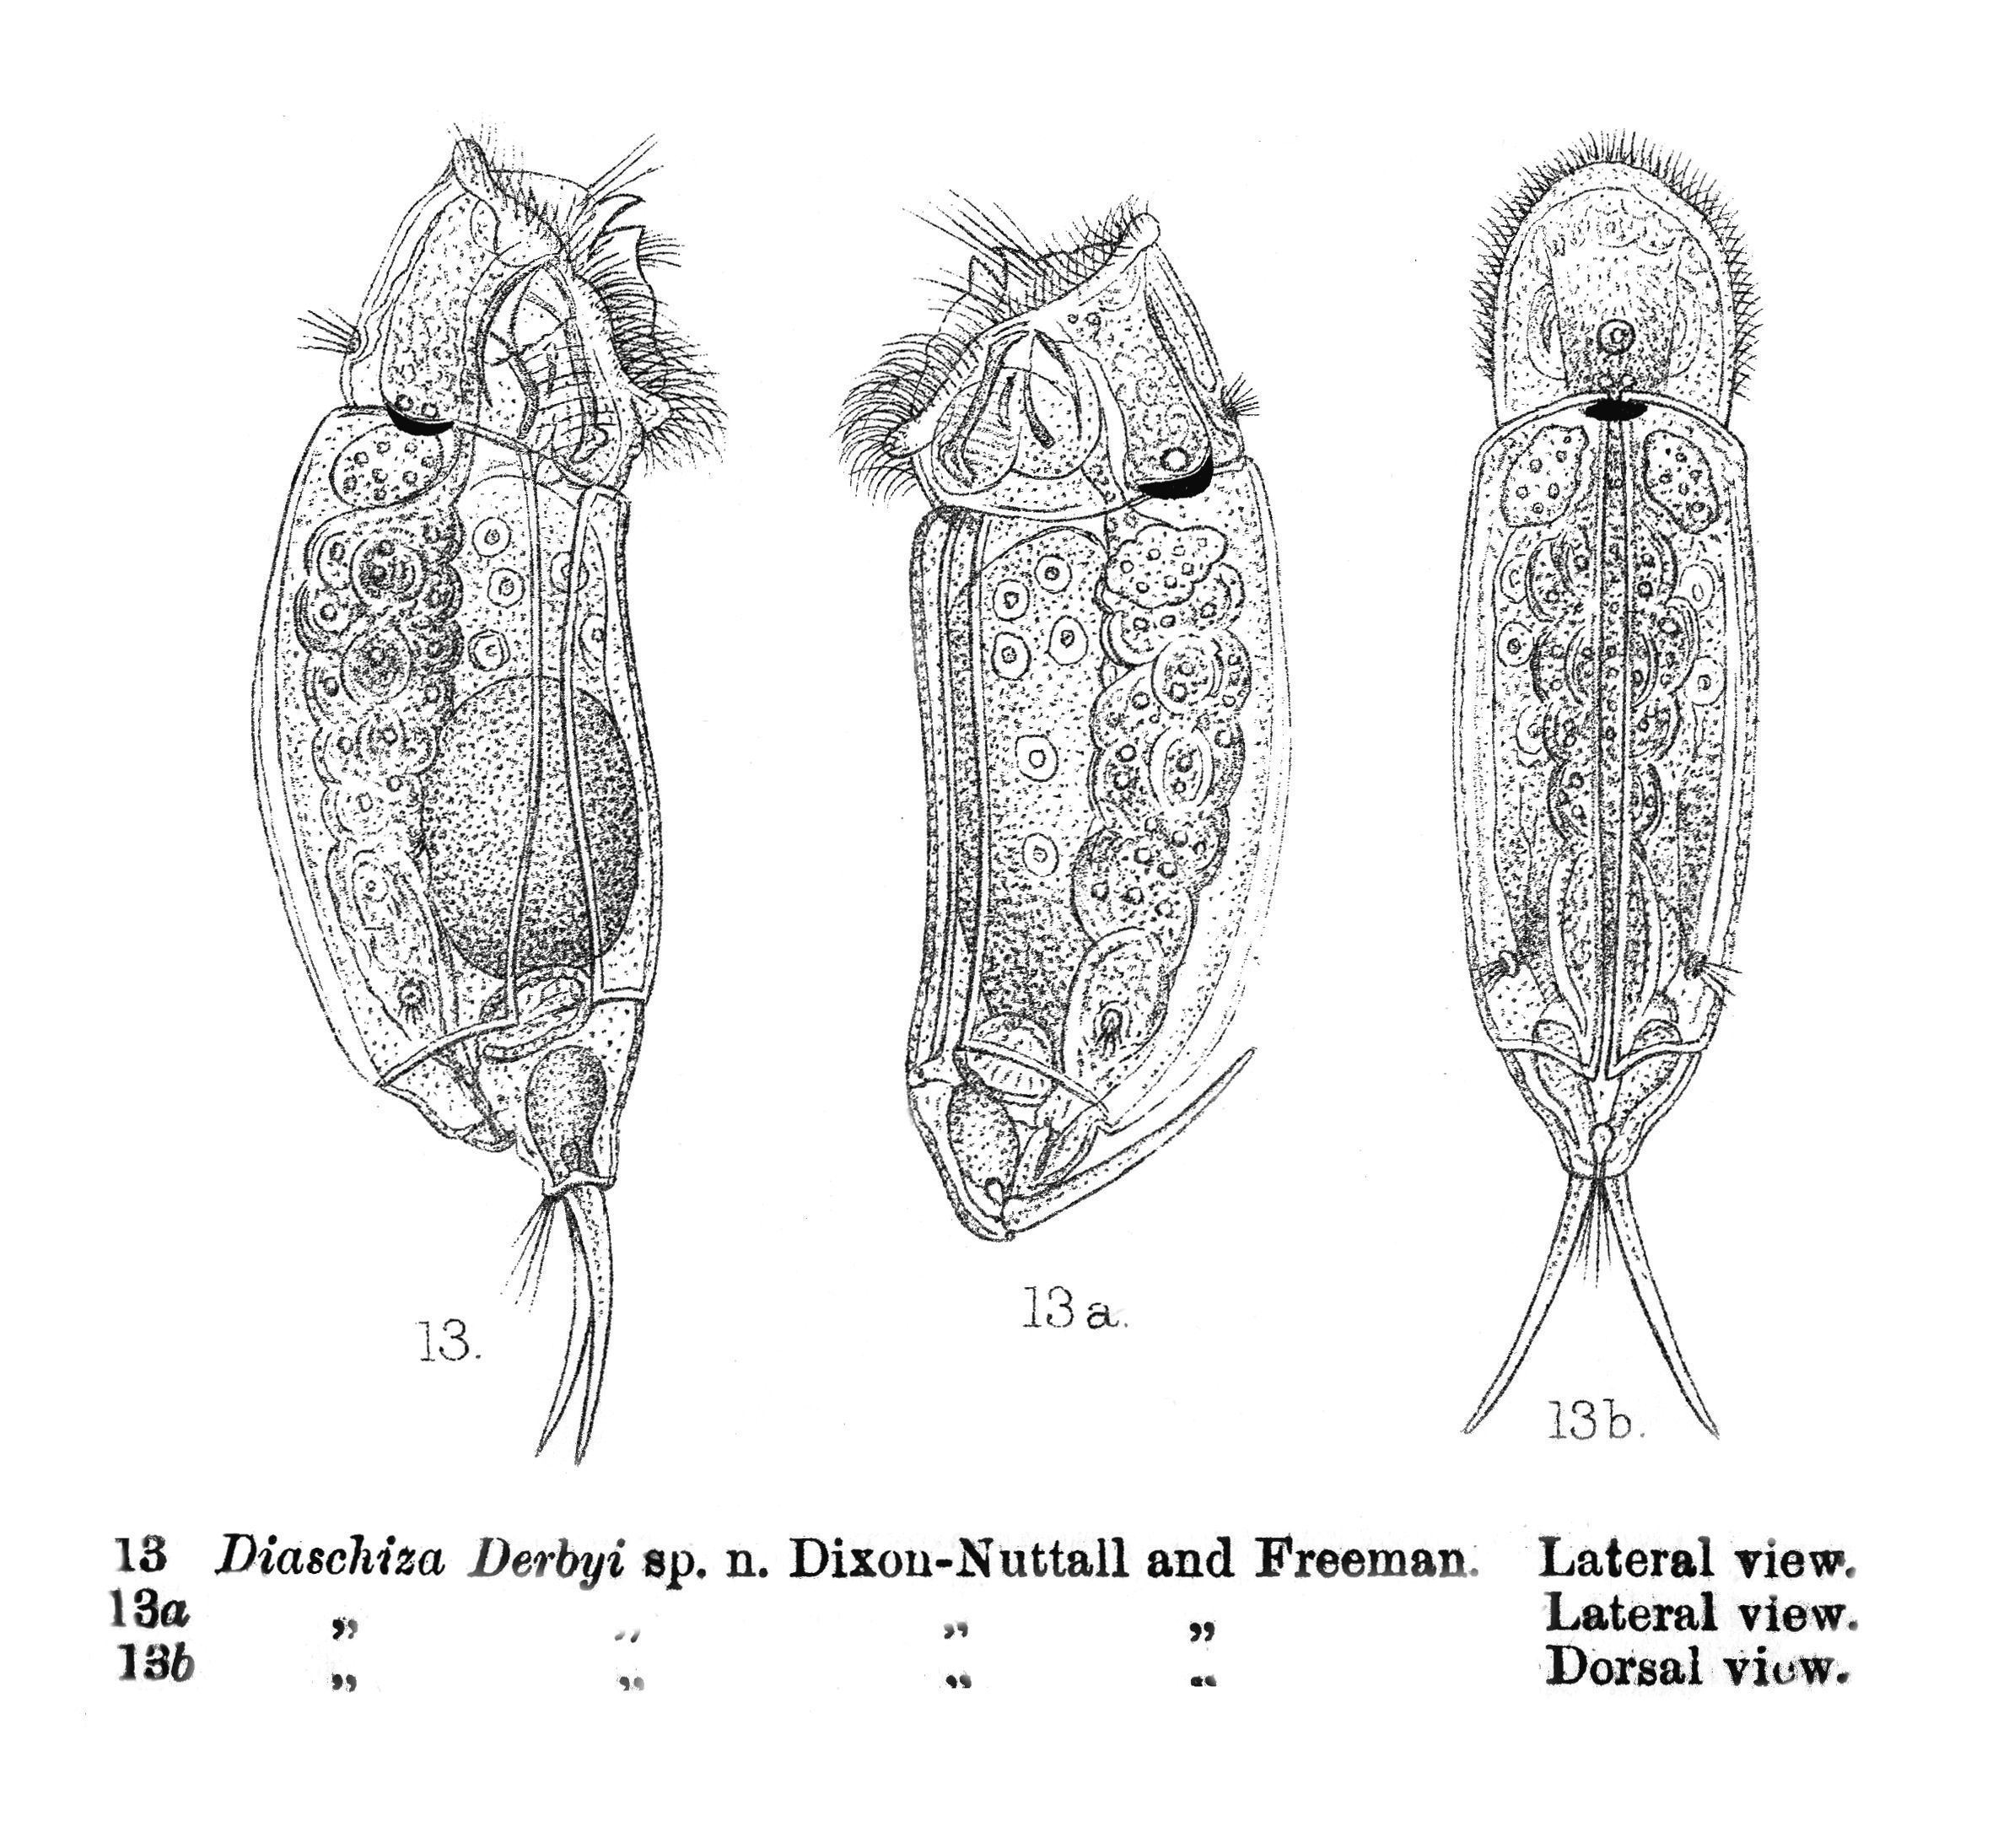 Image of Cephalodella derbyi (Dixon-Nuttall & Freeman 1903)